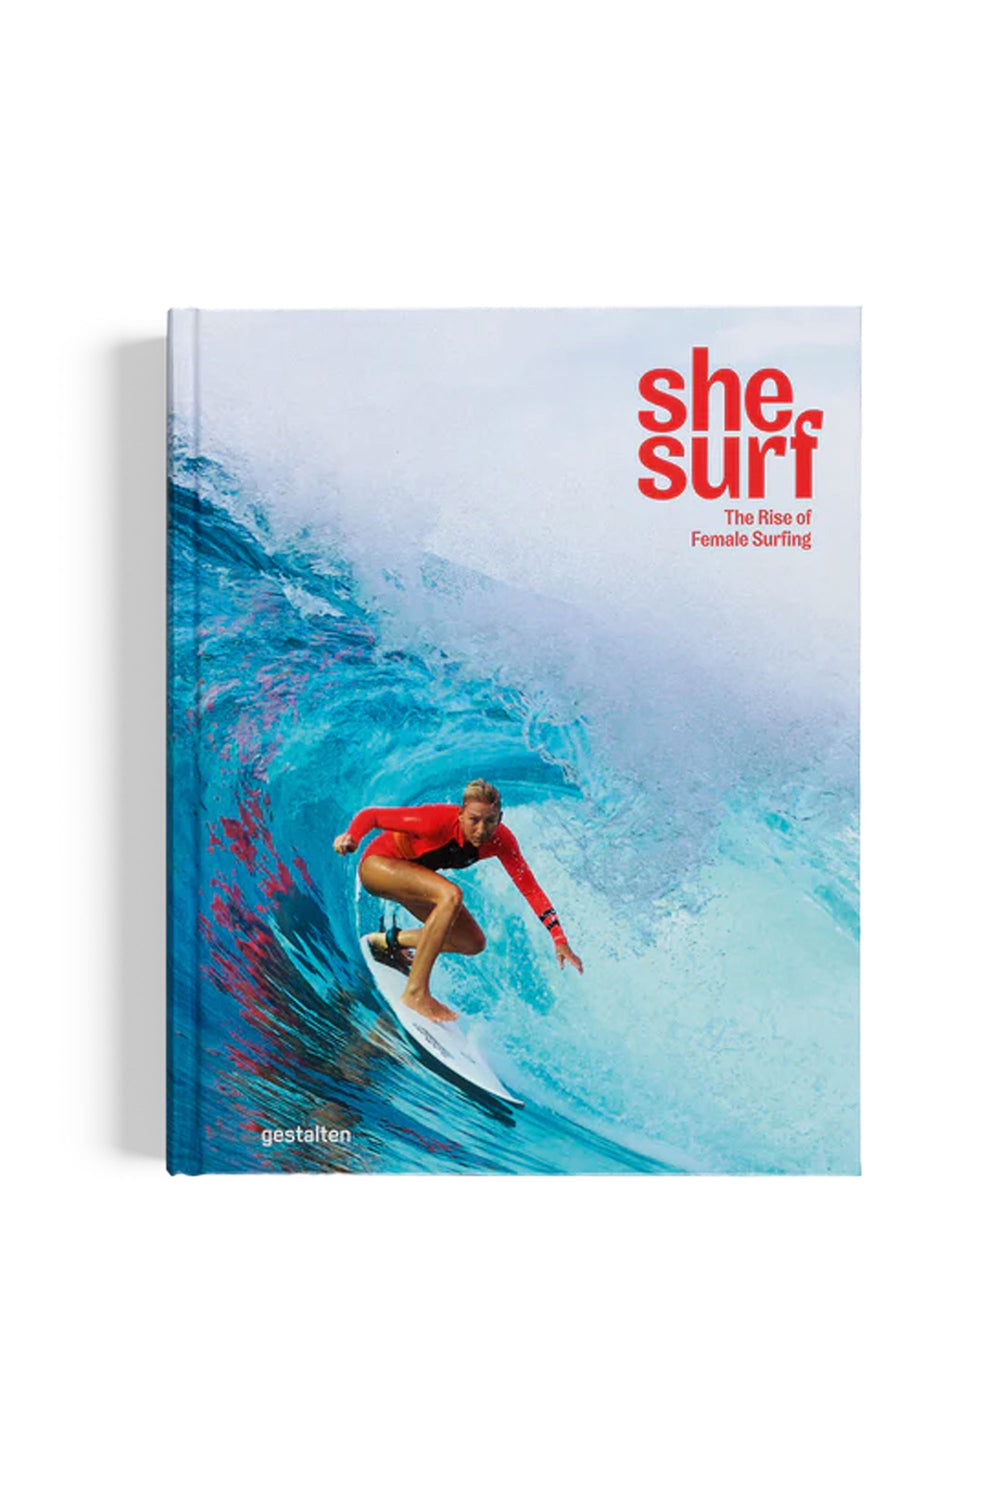 Pukas-Surf-Shop-geltalten-she-surf-book